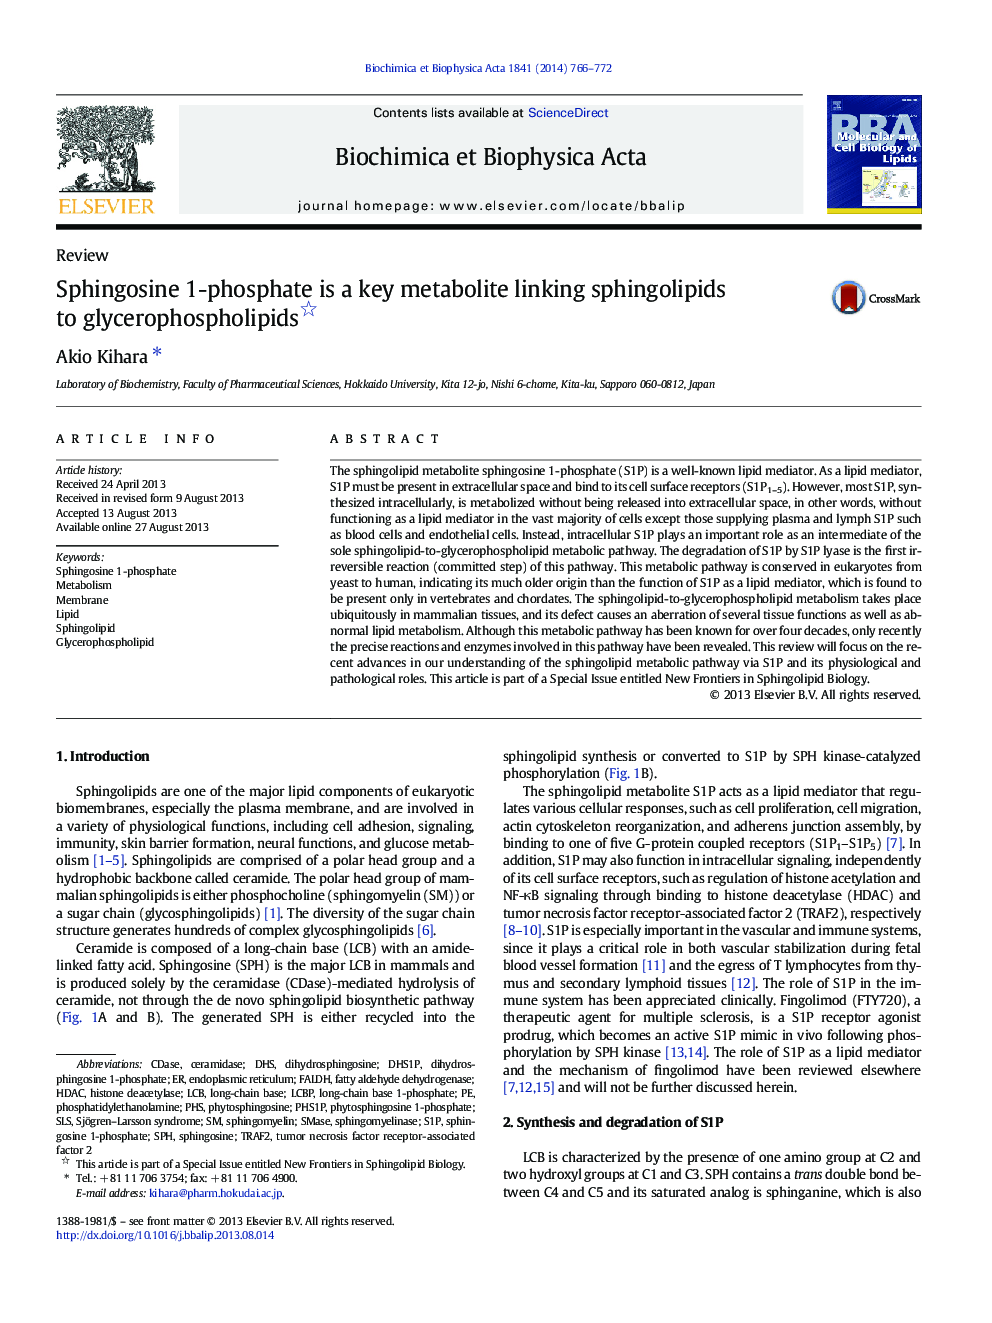 اسفنگوسین 1-فسفات یک متابولیت کلیدی است که اسپیگیلوپید ها را به گلیسروفسفلیپید ها متصل می کند؟ 